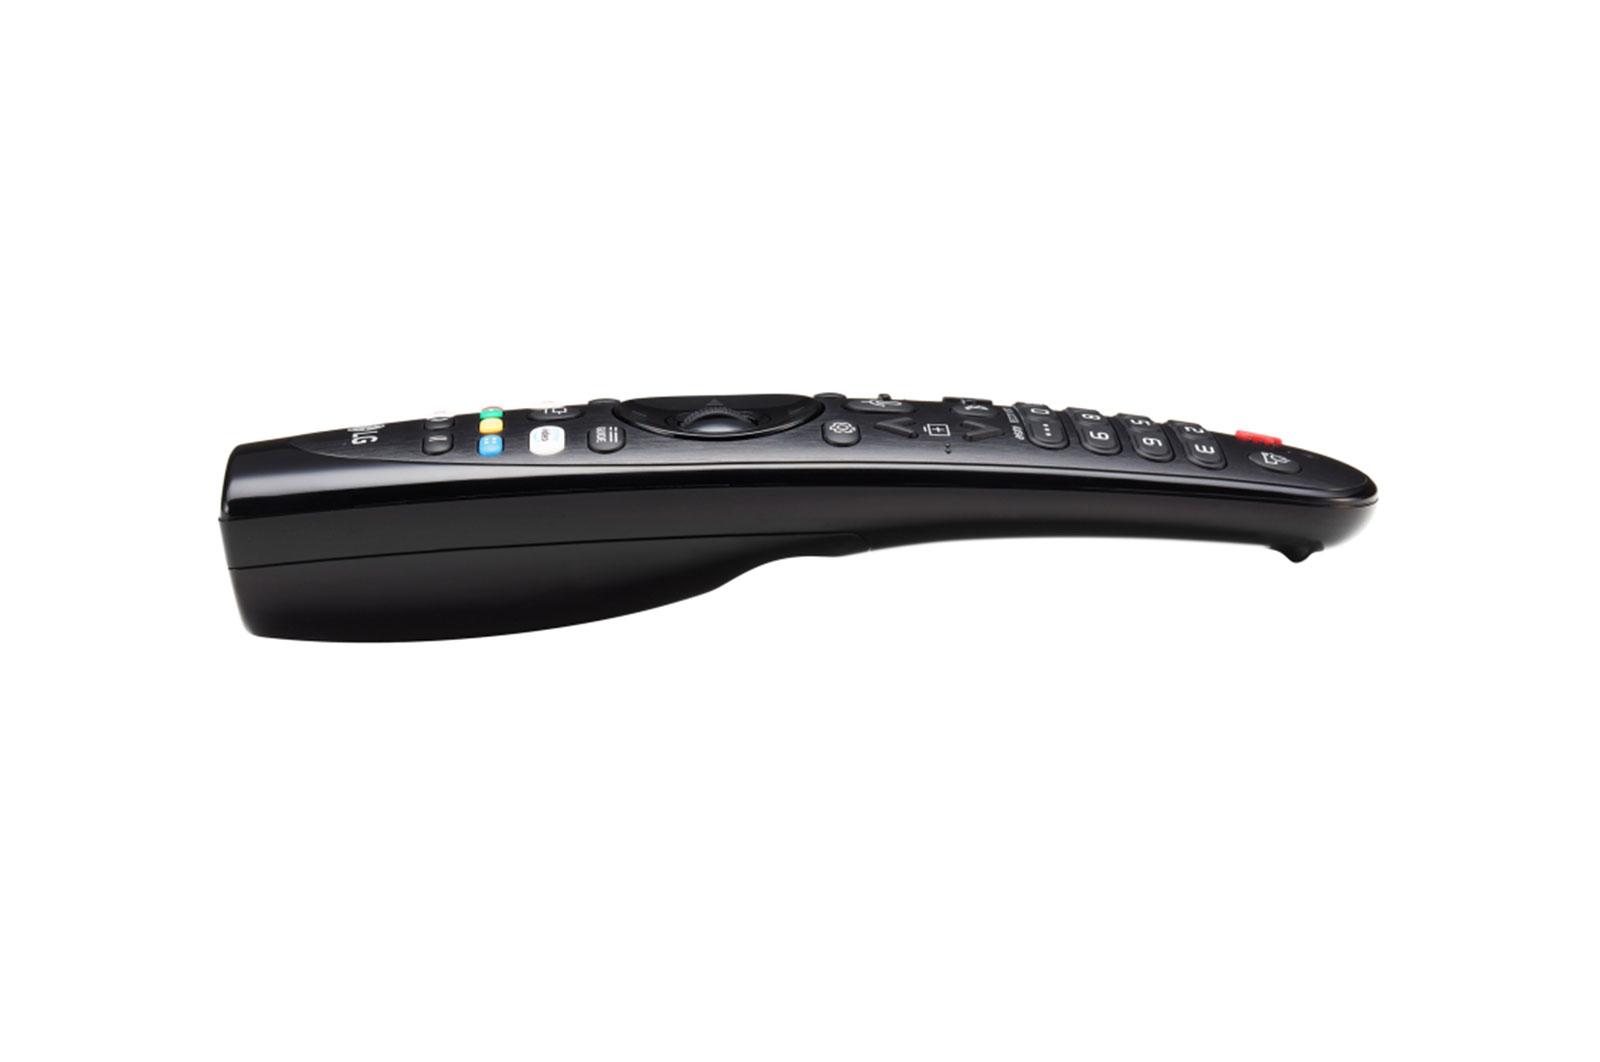 [HCM]Điều khiển LG Magic Remote AN-MR19BA cho smart tivi LG 2019 ( Remote thông minh - Hàng hãng - Tặng...